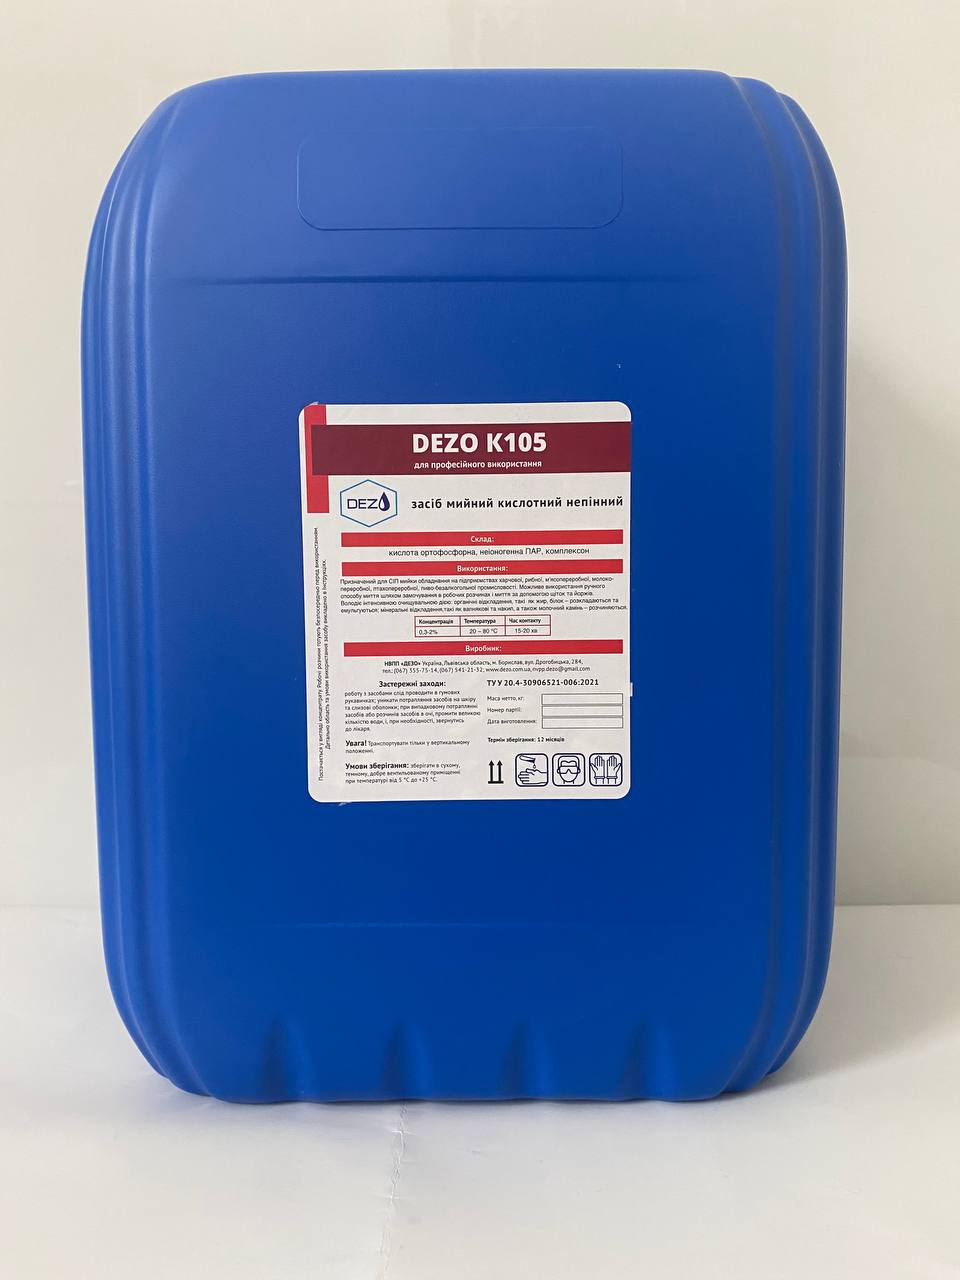 Засіб мийний кислотний непінний DEZO К105, 12 кг